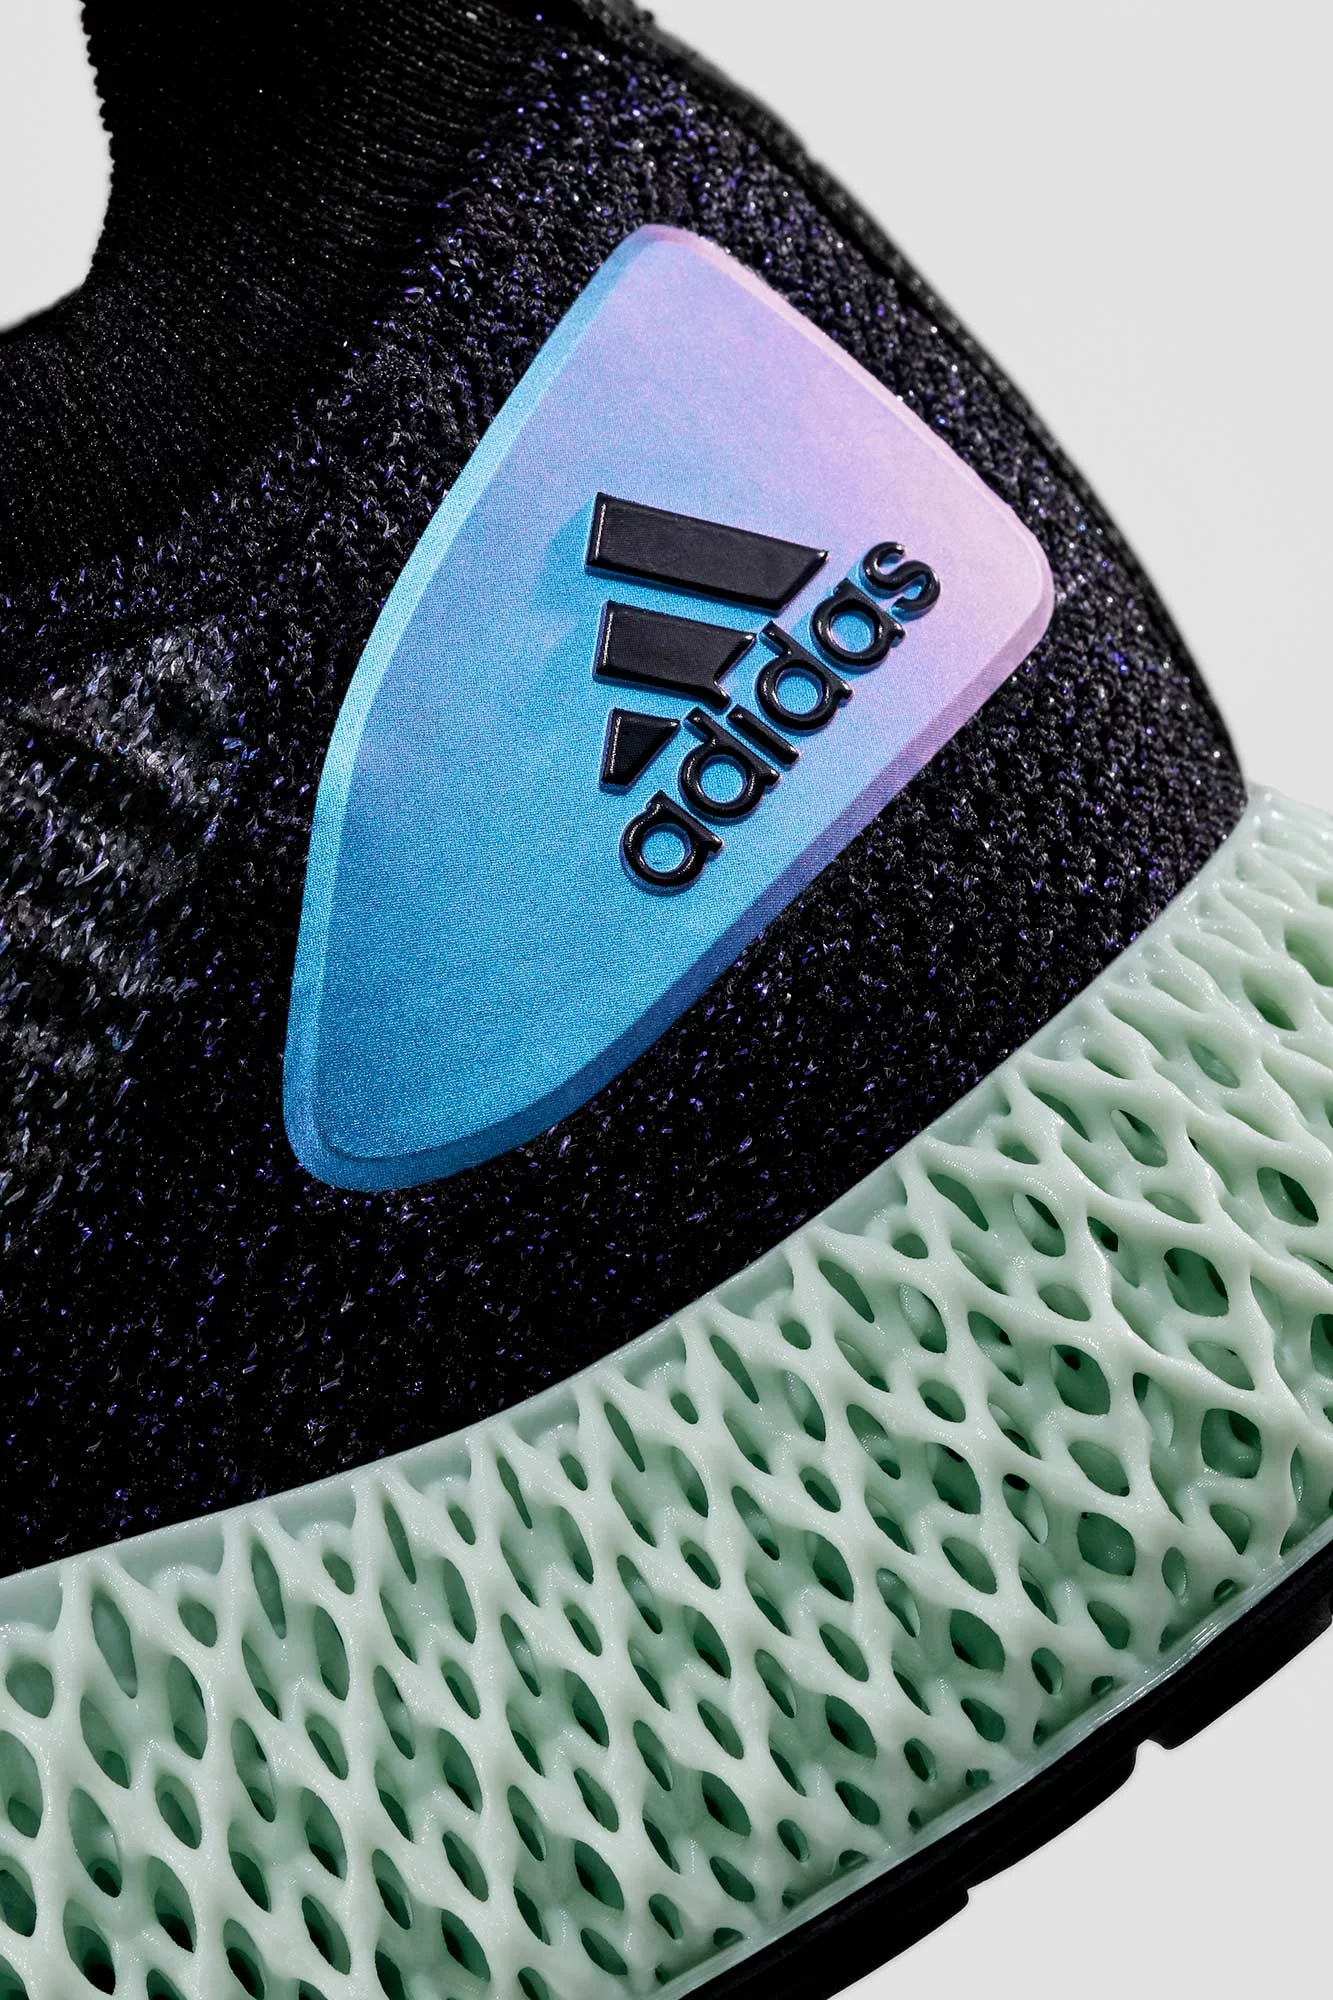 Adidas x Highsnobiety 6 by Marcus GAAB